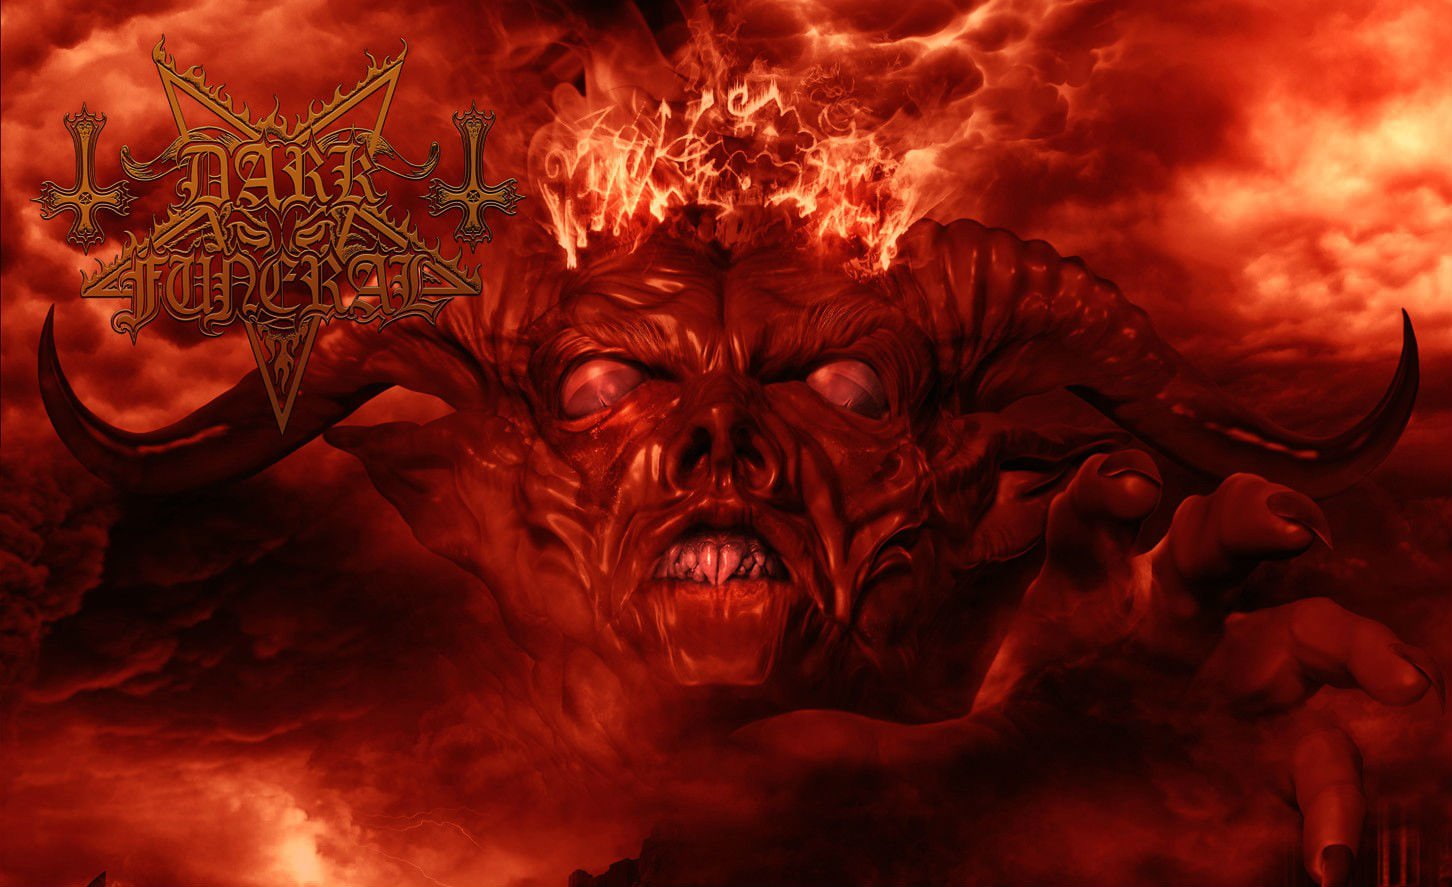 Band (Music), Dark Funeral, Baphomet, Demon, Occult, Satan